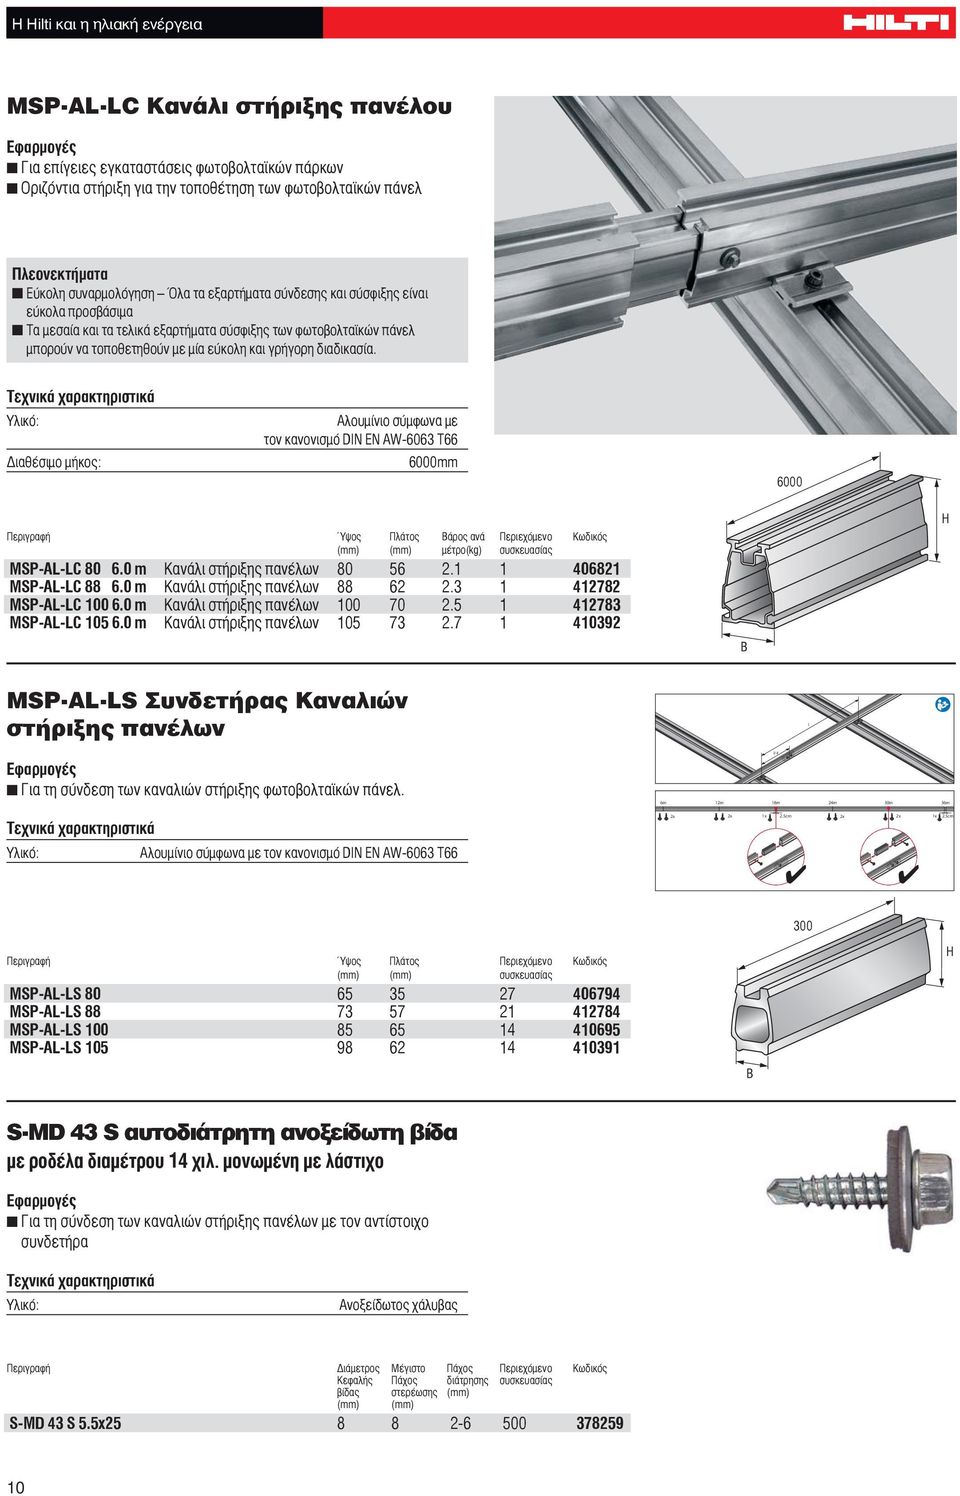 Διαθέσιμο μήκος: Αλουμίνιο σύμφωνα με τον κανονισμό DIN EN AW-6063 T66 6000mm 6000 Περιγραφή Ύψος Πλάτος Βάρος ανά Περιεχόμενο Κωδικός (mm) (mm) μέτρο(kg) MSP-AL-LC 80 6.